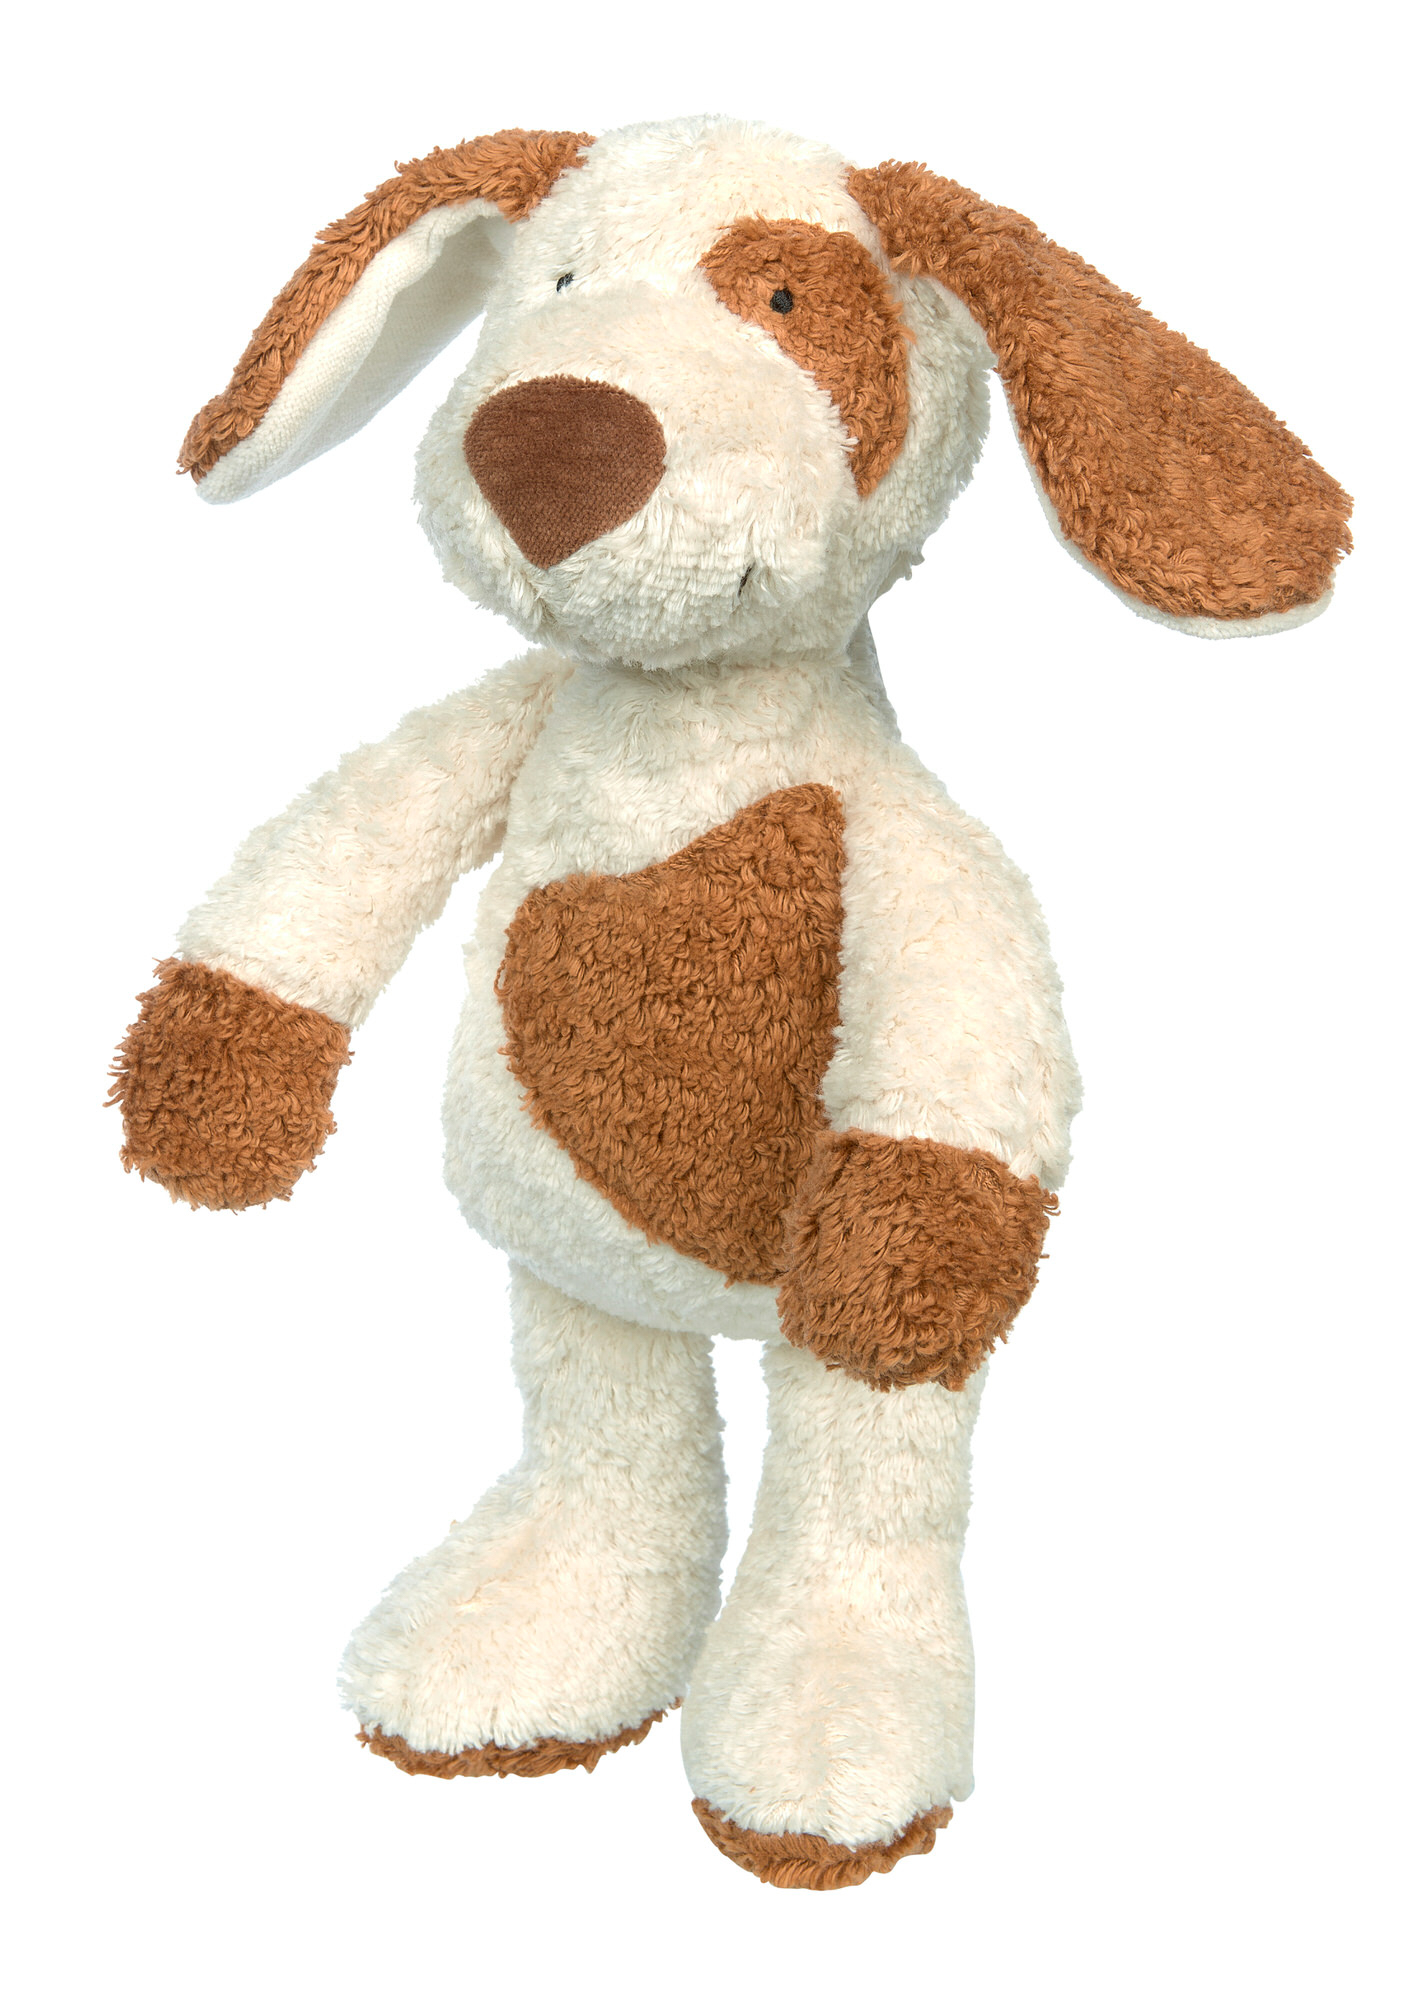 Stuffed toy dog, organic cotton